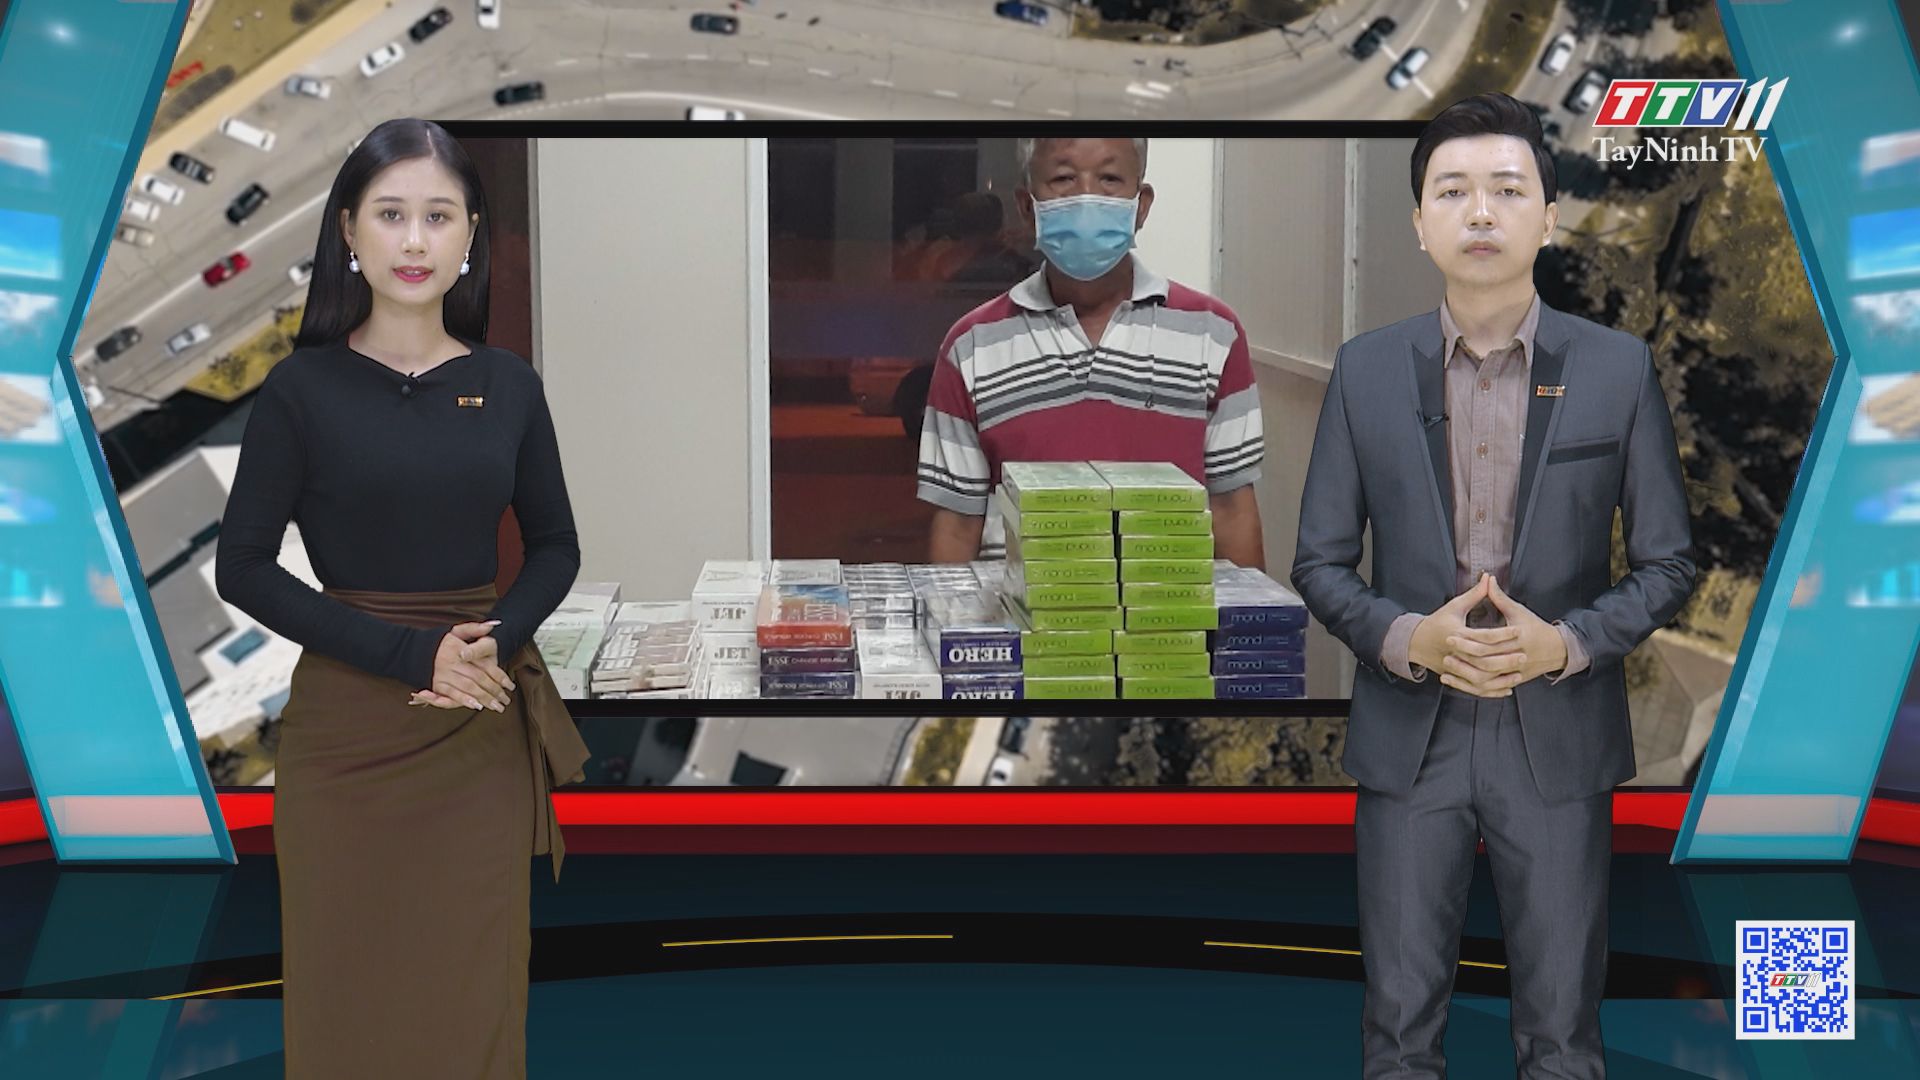 CSGT Tây Ninh phát hiện hơn 1.500 gói thuốc lá ngoại nhập lậu | VĂN HÓA GIAO THÔNG | TayNinhTV